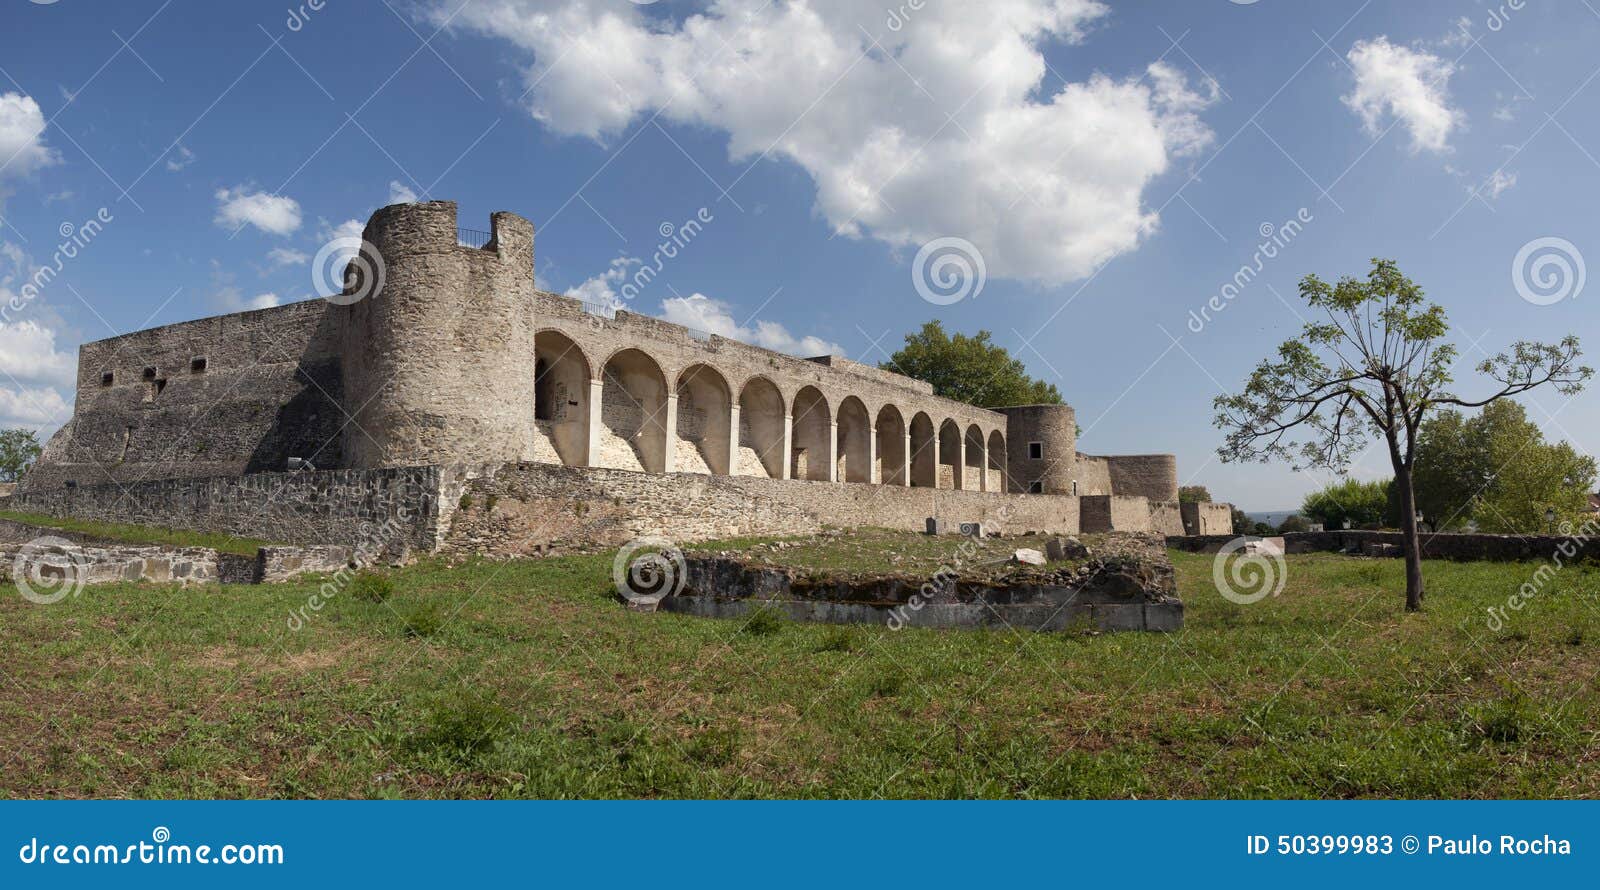 abrantes castle in portugal